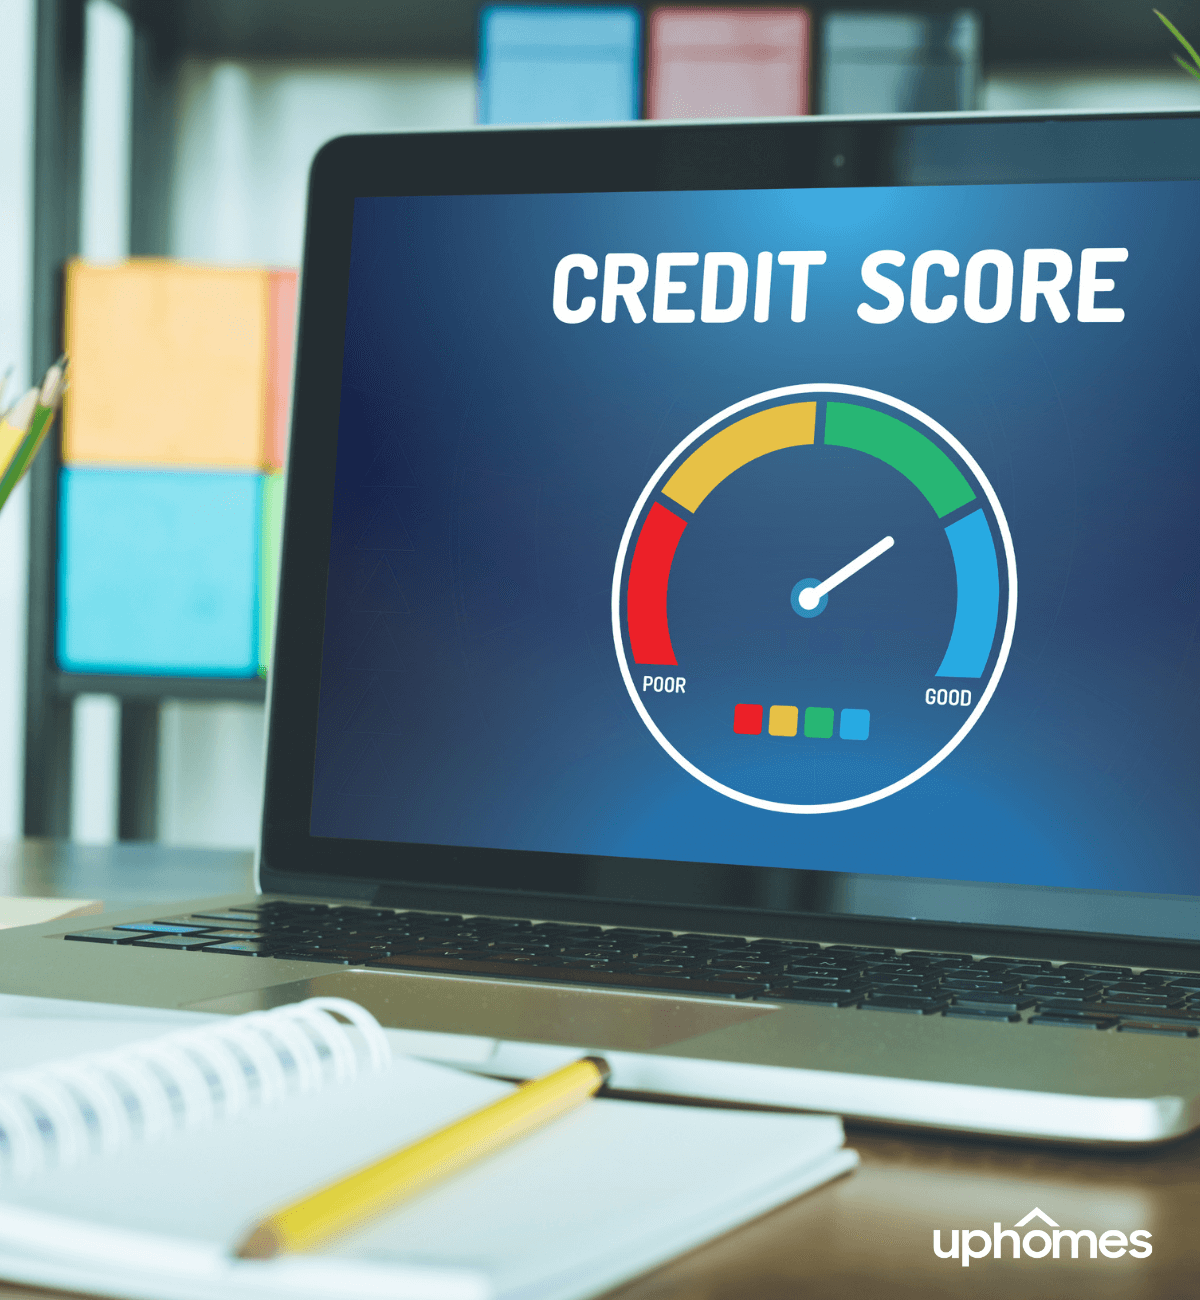 Con che frequenza si aggiorna il karma di credito?